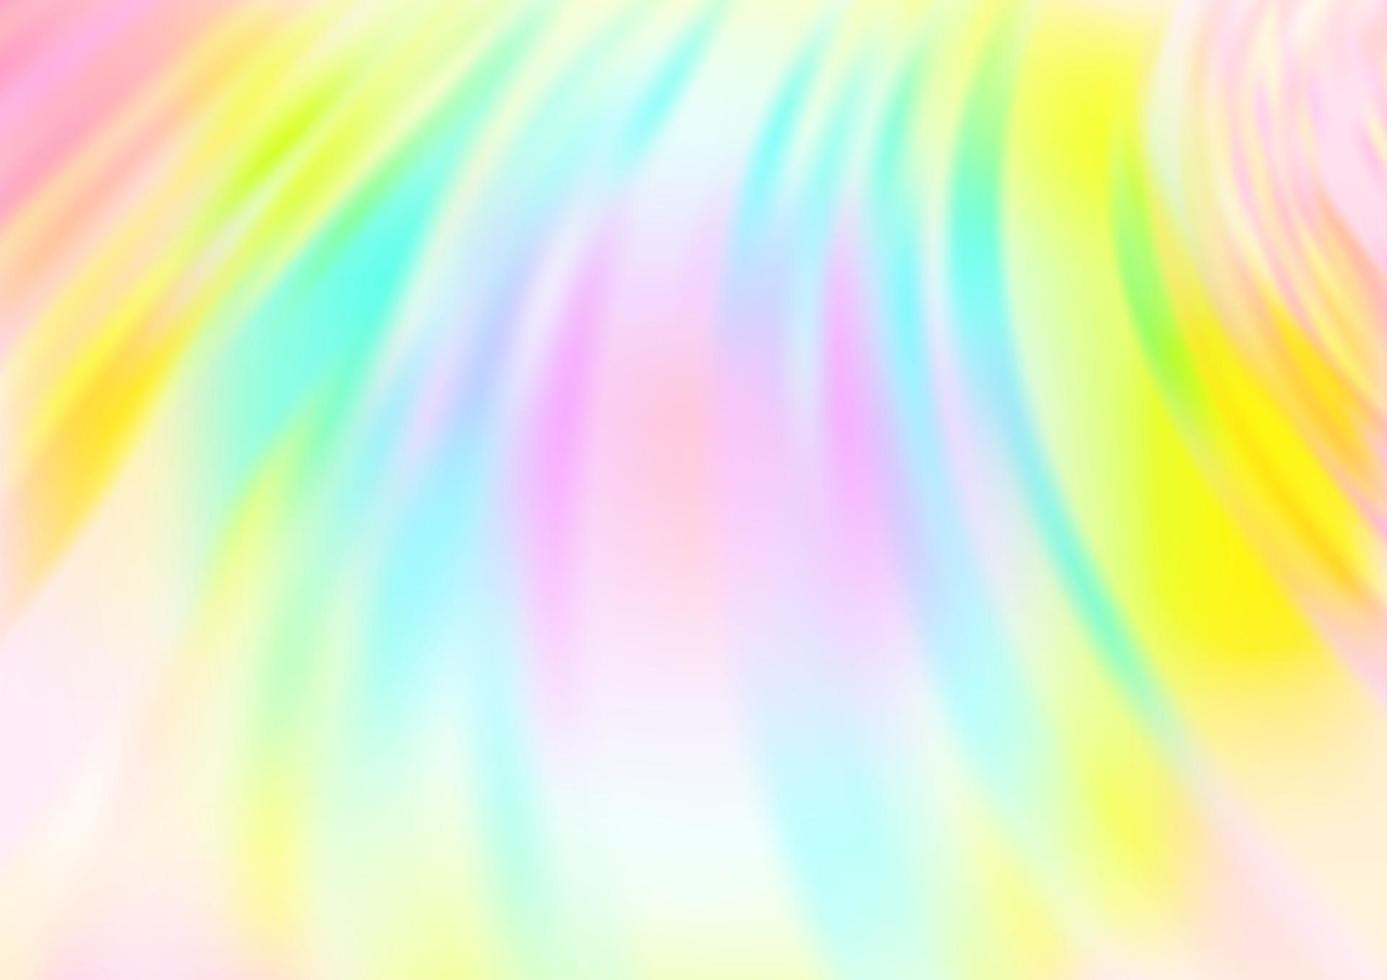 ljus multicolor, regnbåge vektor suddighet mönster.